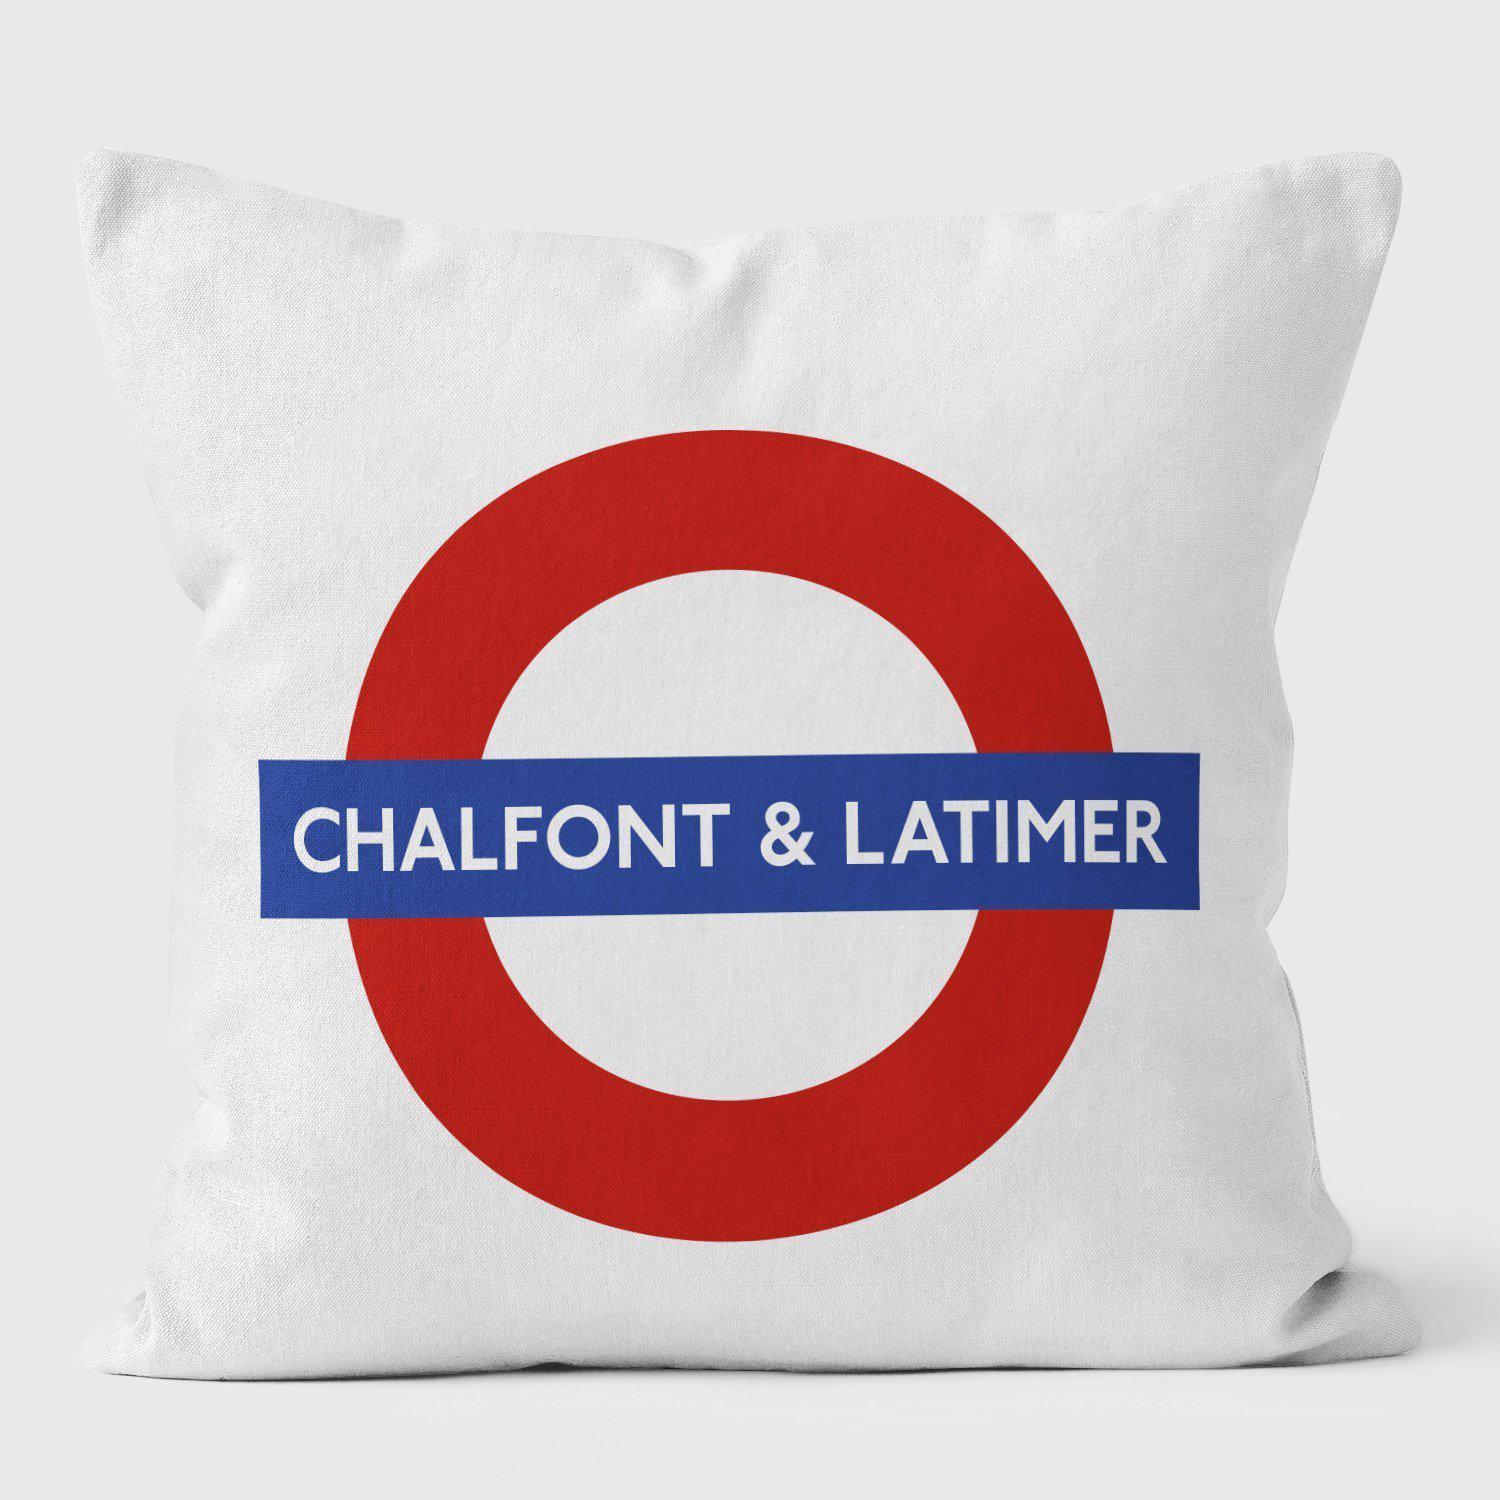 Chalfont Latimer London Underground Tube Station Roundel Cushion - Handmade Cushions UK - WeLoveCushions